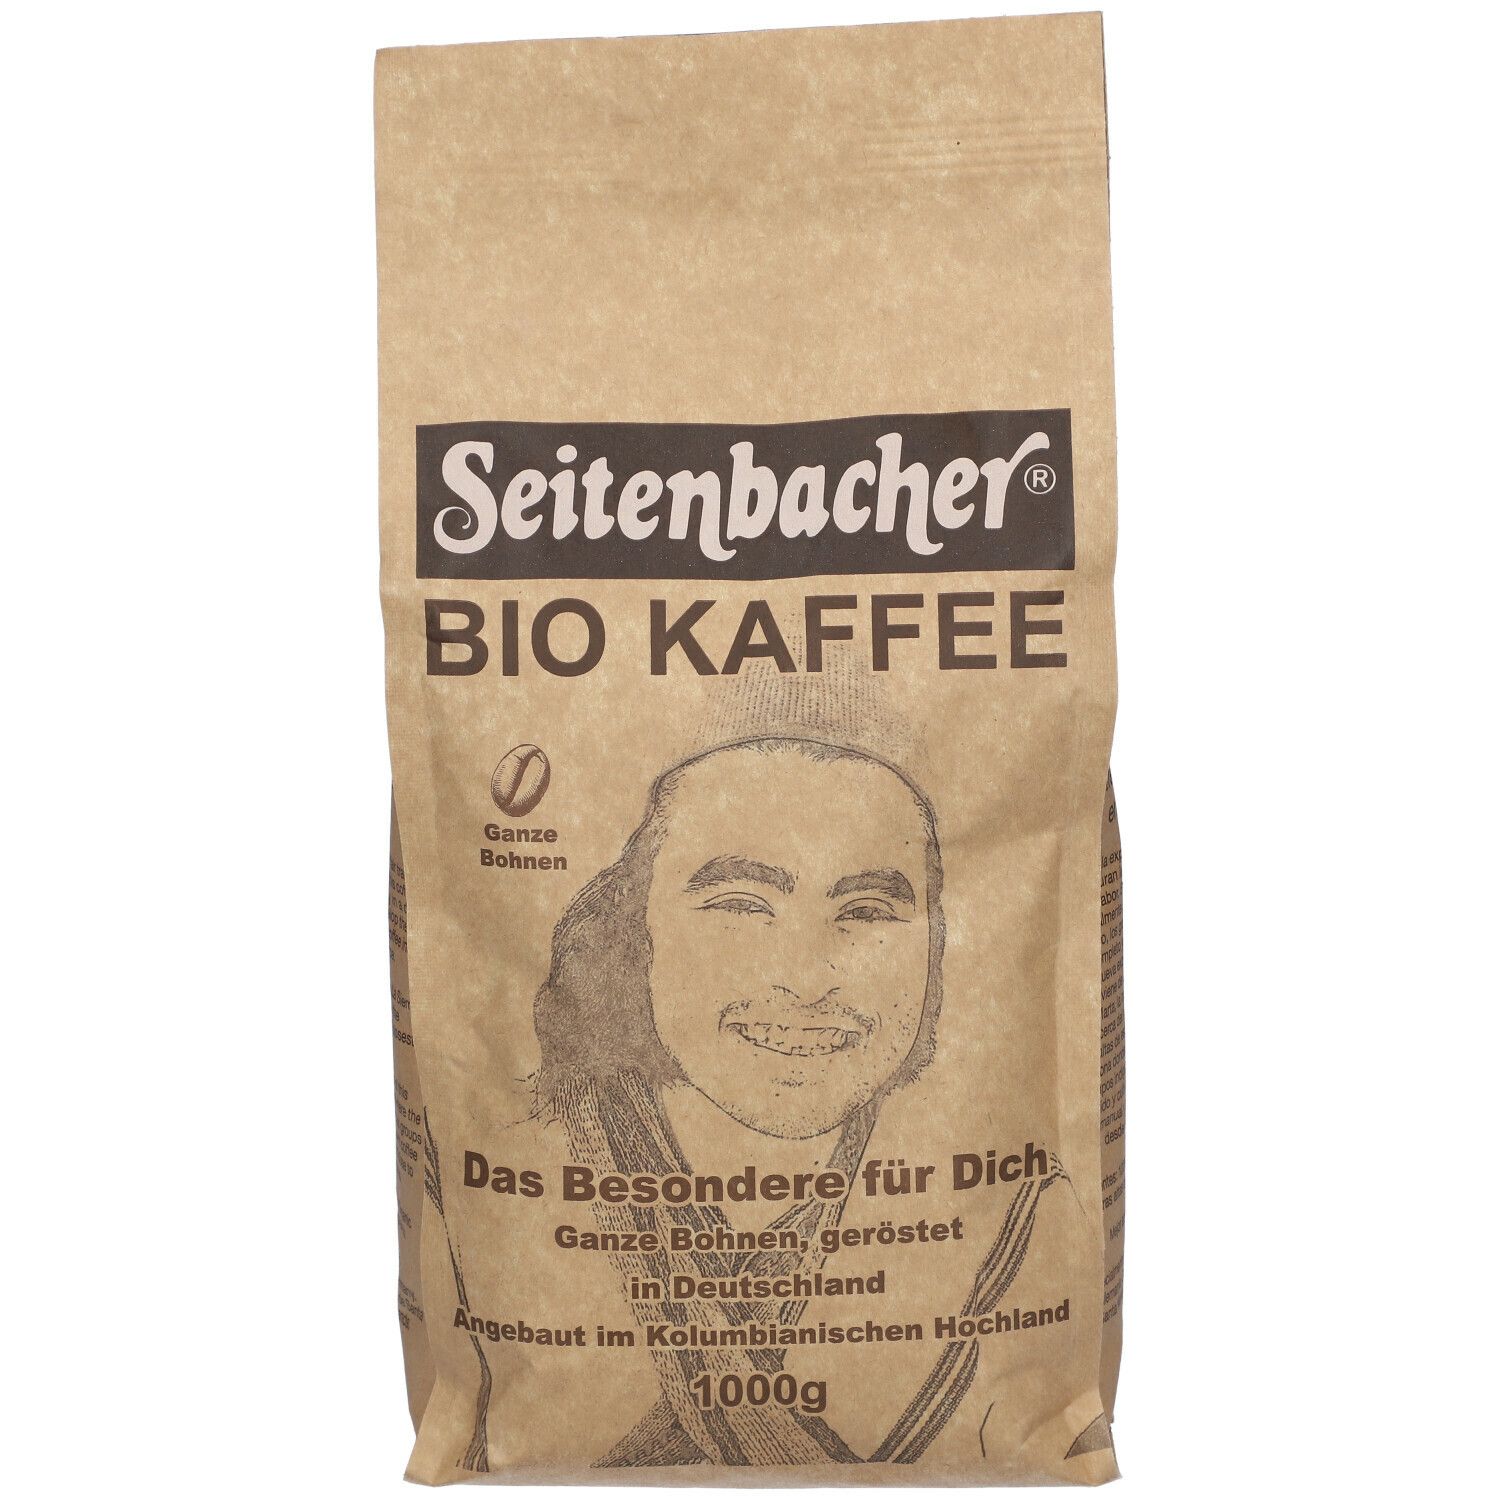 Seitenbacher® BIO KAFFEE ganze Bohnen